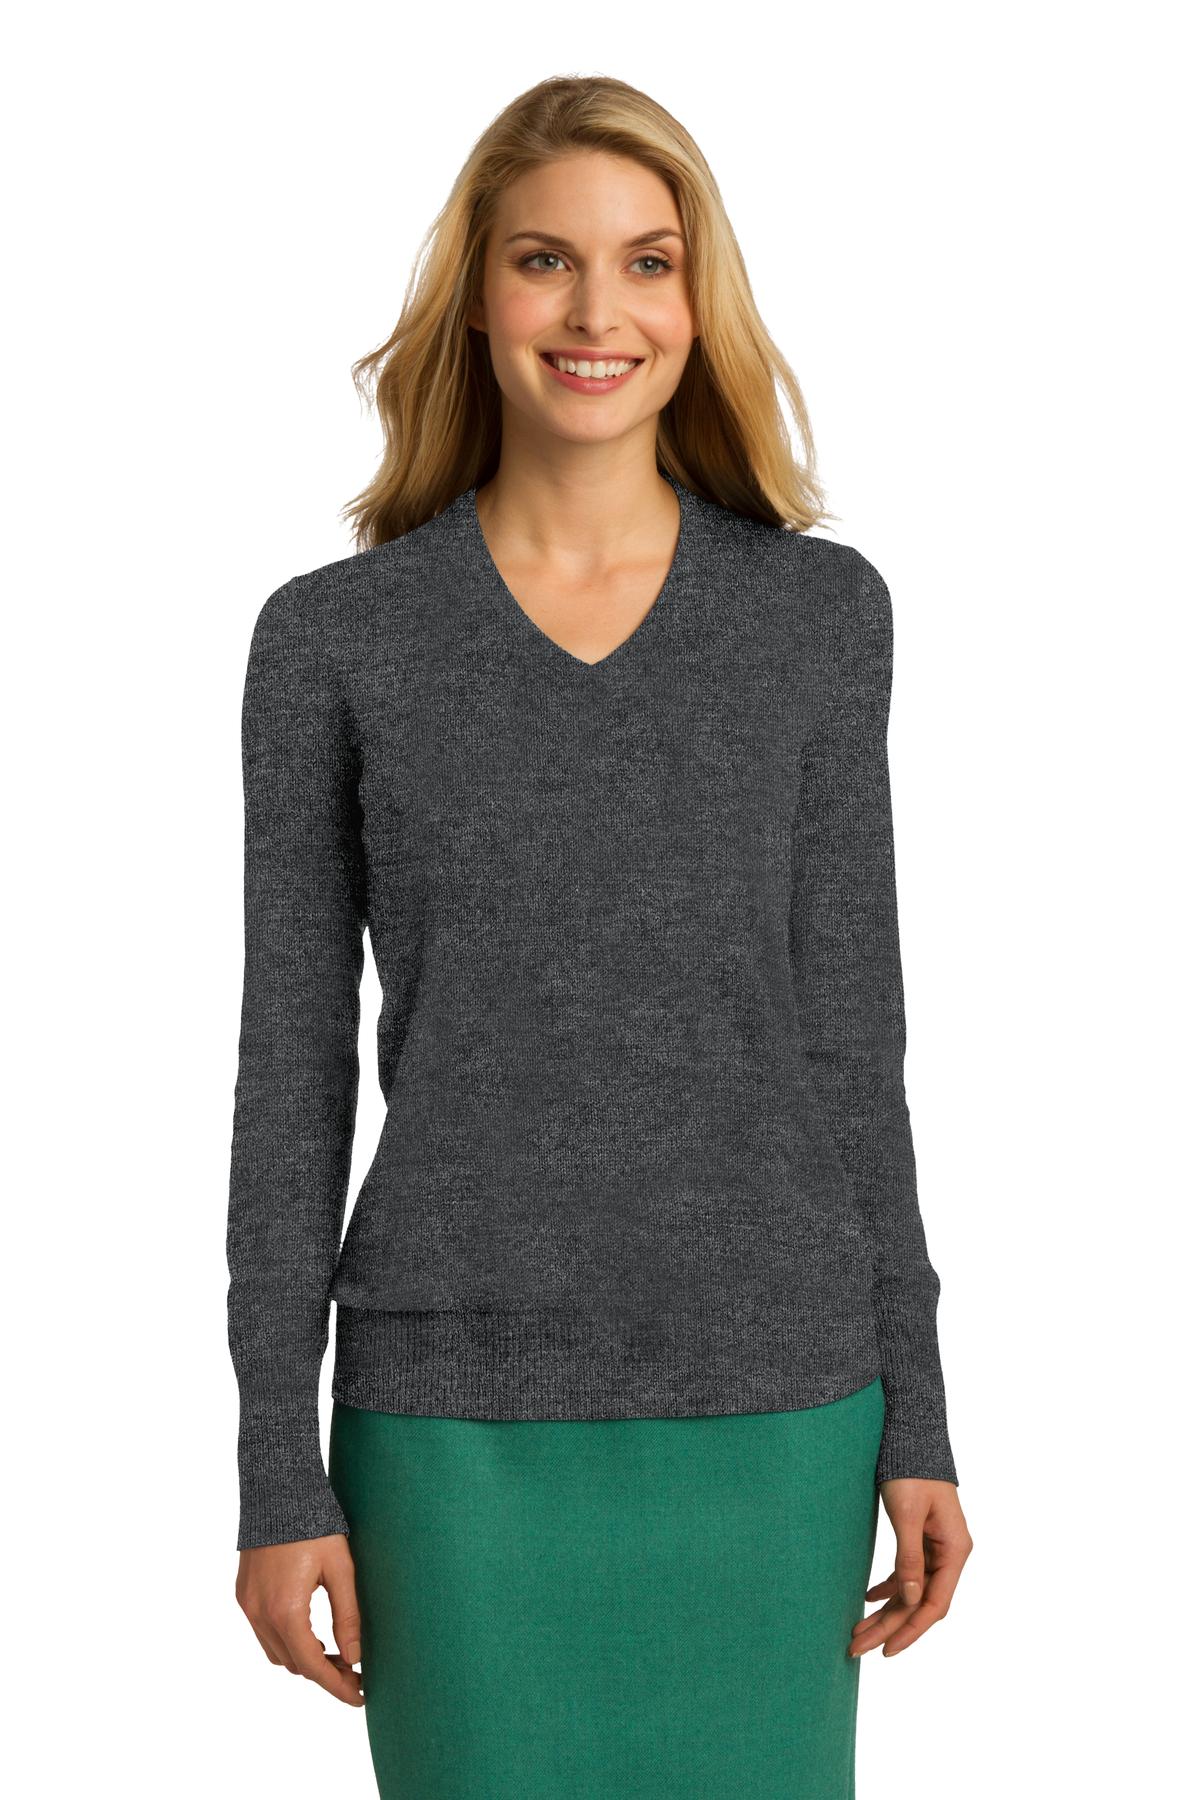 LSW285 - Ladies V-Neck Sweater